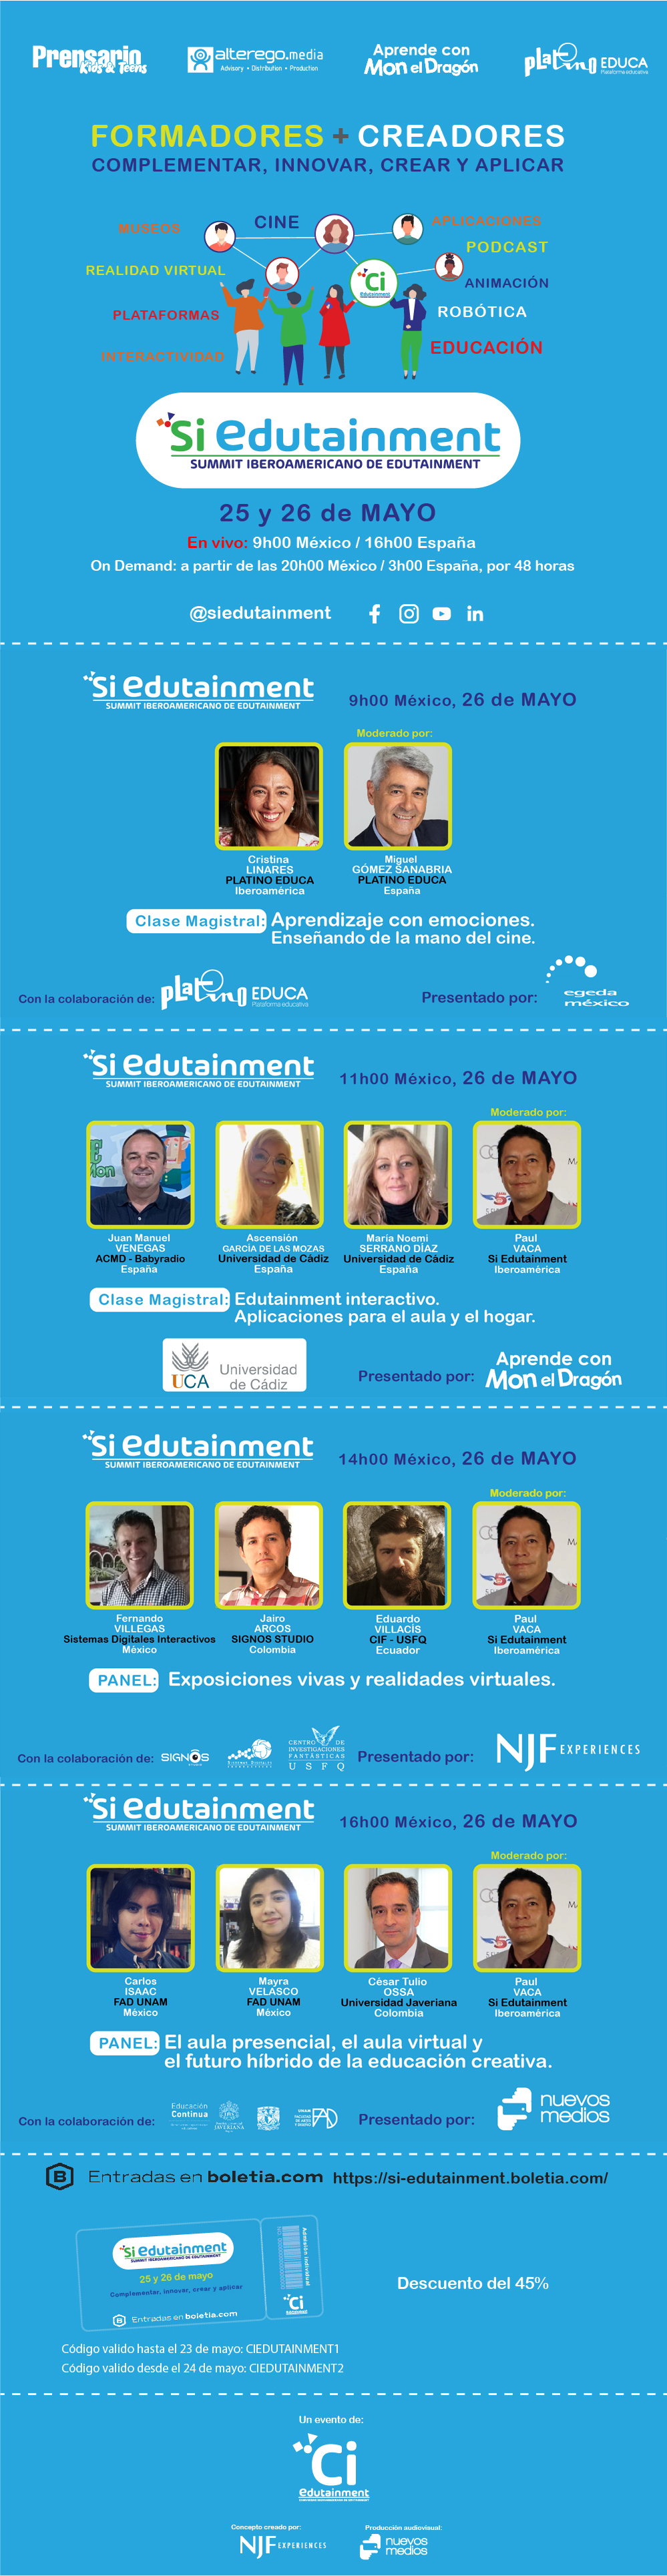 Cumbre Si Edutainment para Formadores y Creadores de Iberoamérica